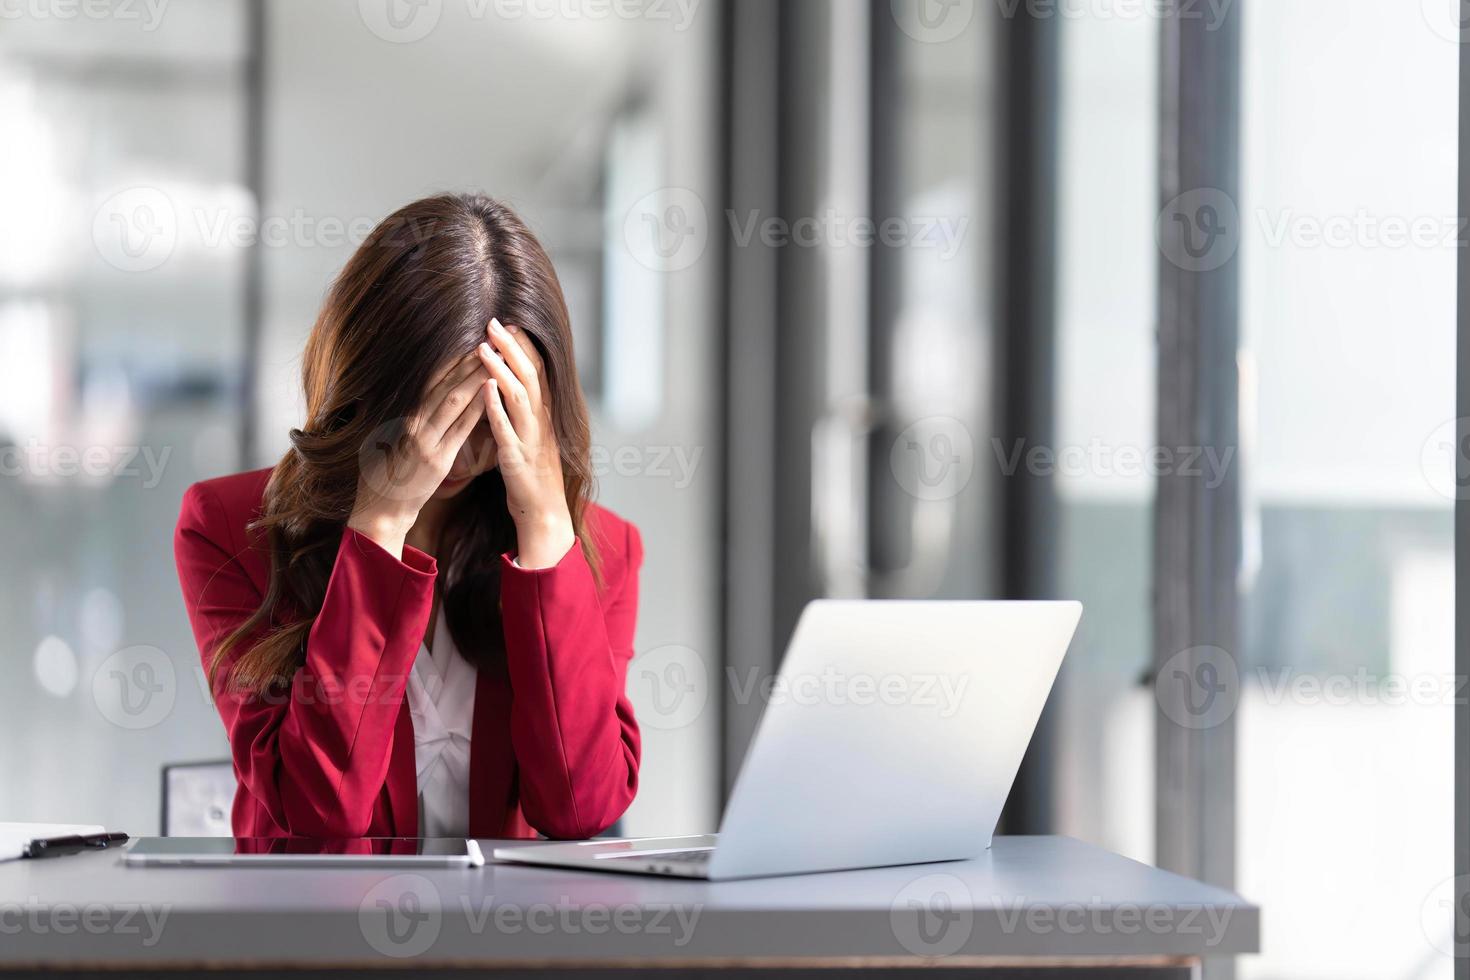 mulher asiática pensando muito preocupada com a solução de problemas on-line olhando para a tela do laptop, preocupada empresária asiática séria focada em resolver tarefa difícil de computador de trabalho foto